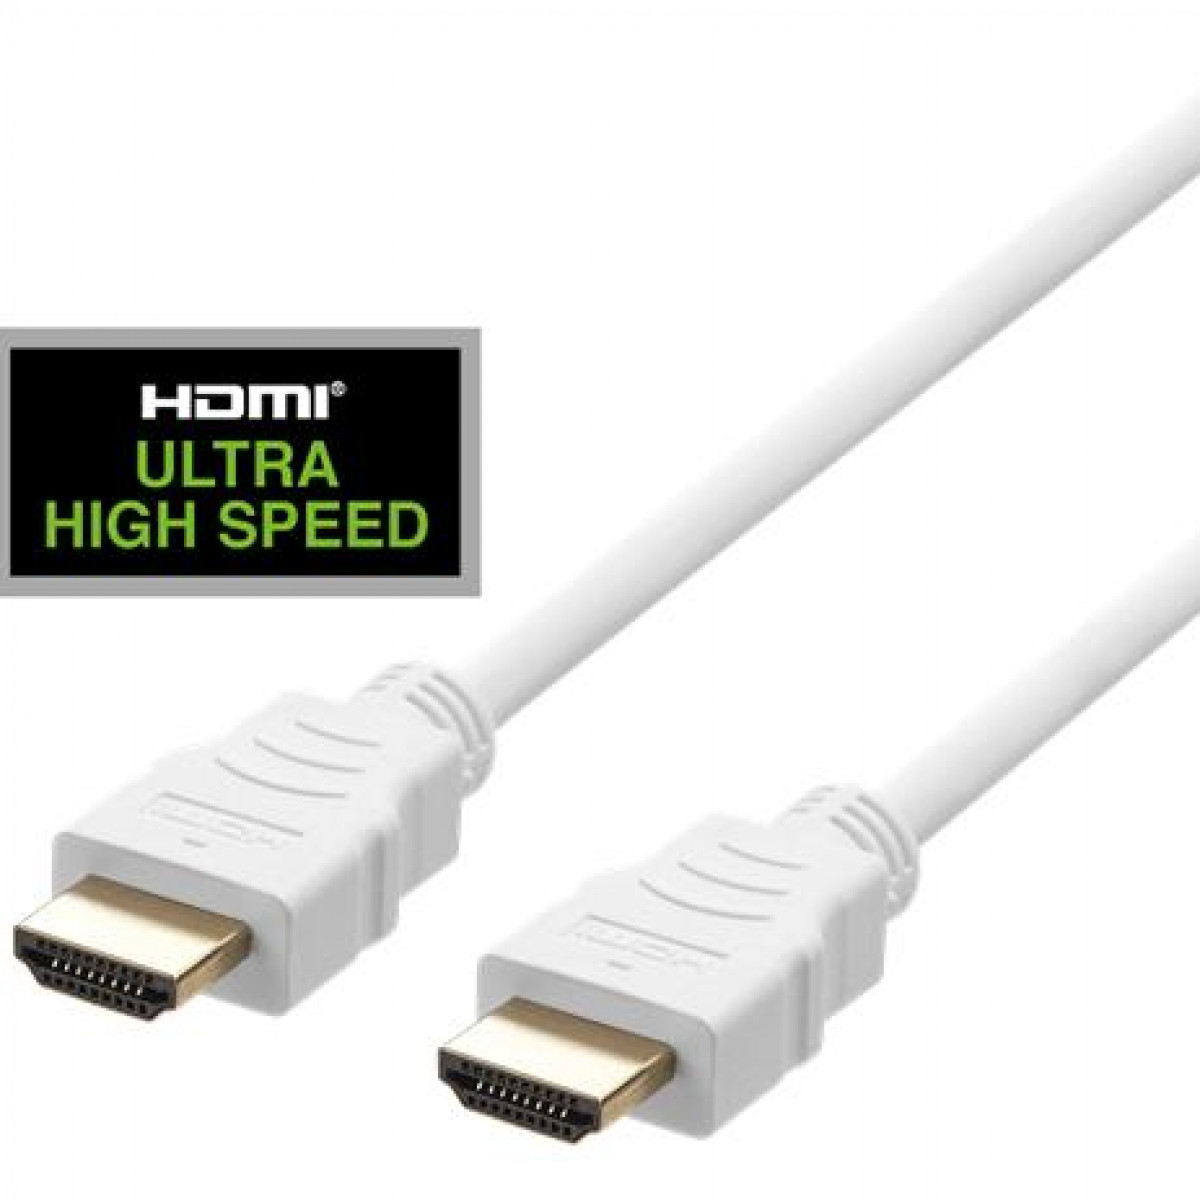 DELTACO DELTACO 1m, weiß 48Gbps, ULTRA Speed HDMI-Kabel, HDMI-Kabel High